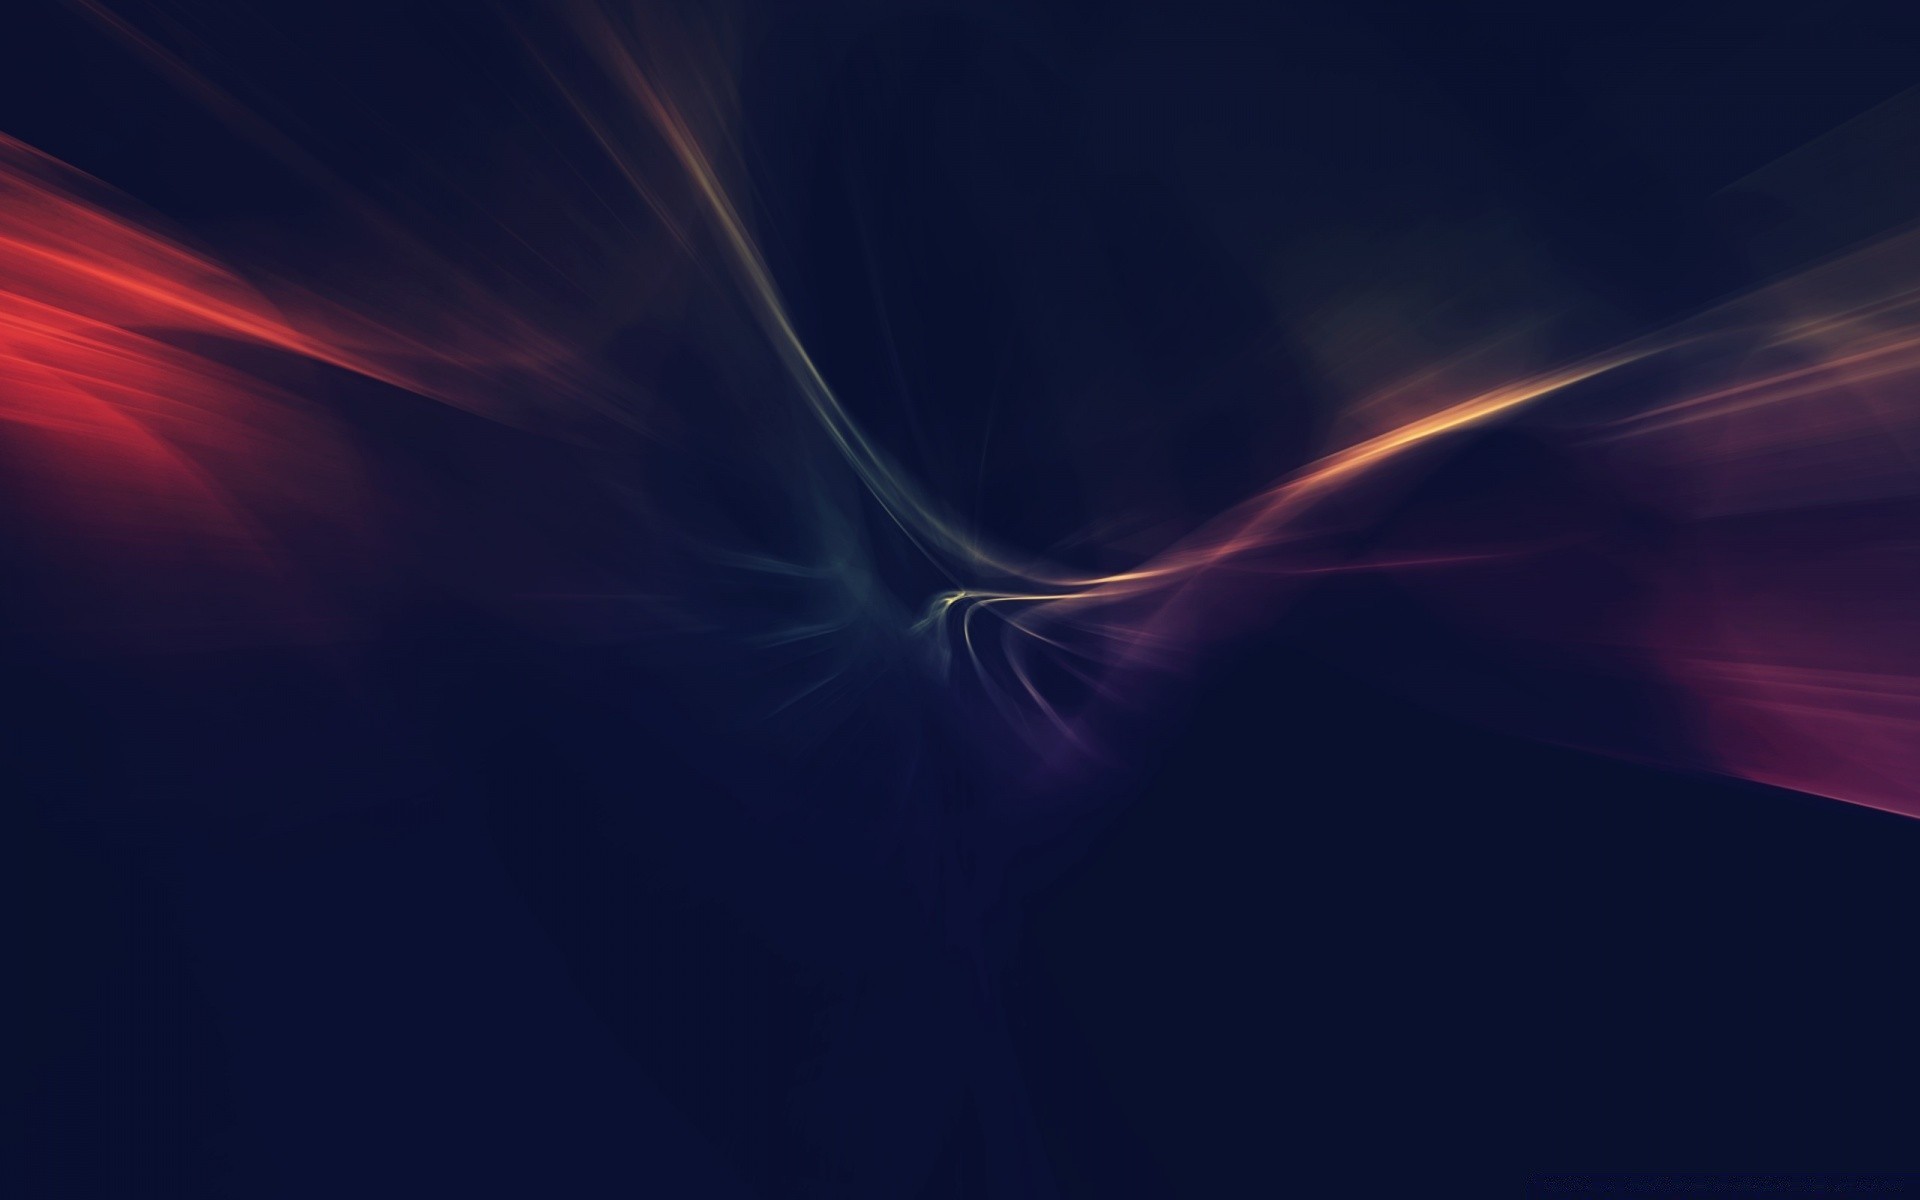 абстракция свет искусство энергии иллюстрация график молния движения обои формы фрактал цвет текстура фон дизайн размытость волна шаблон пламя футуристический